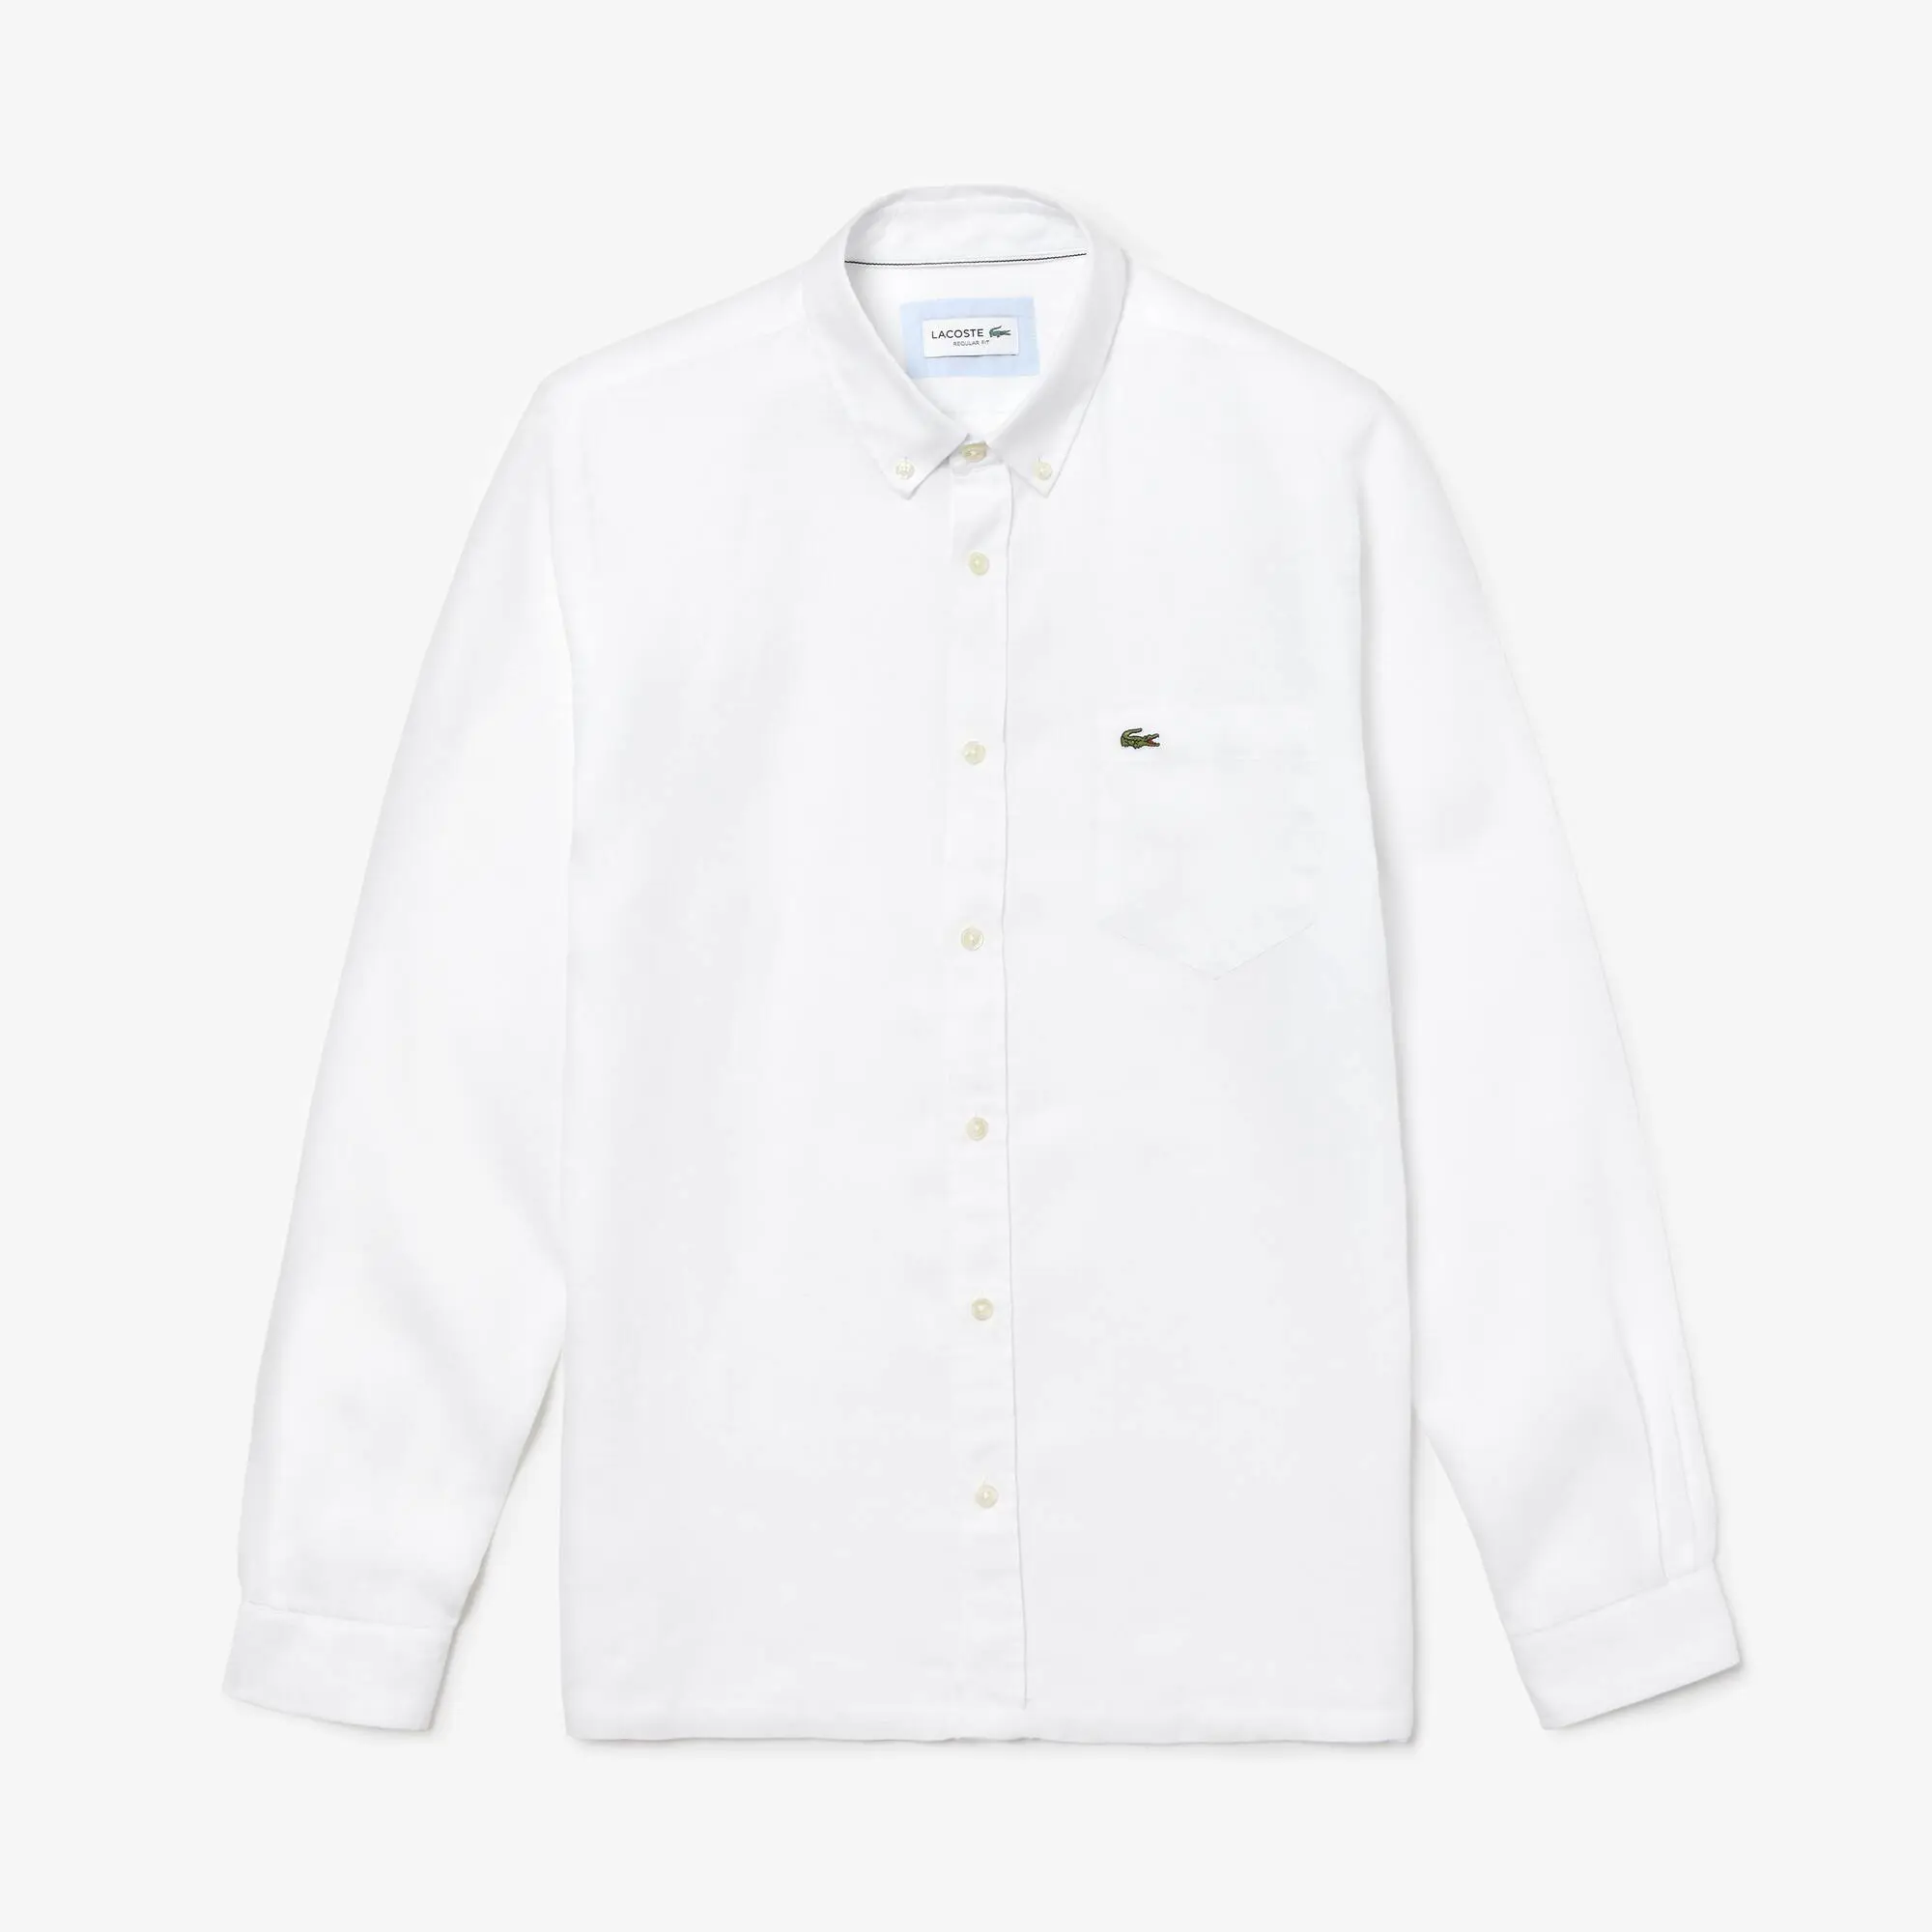 Lacoste Men's Regular Fit Linen Shirt. 2